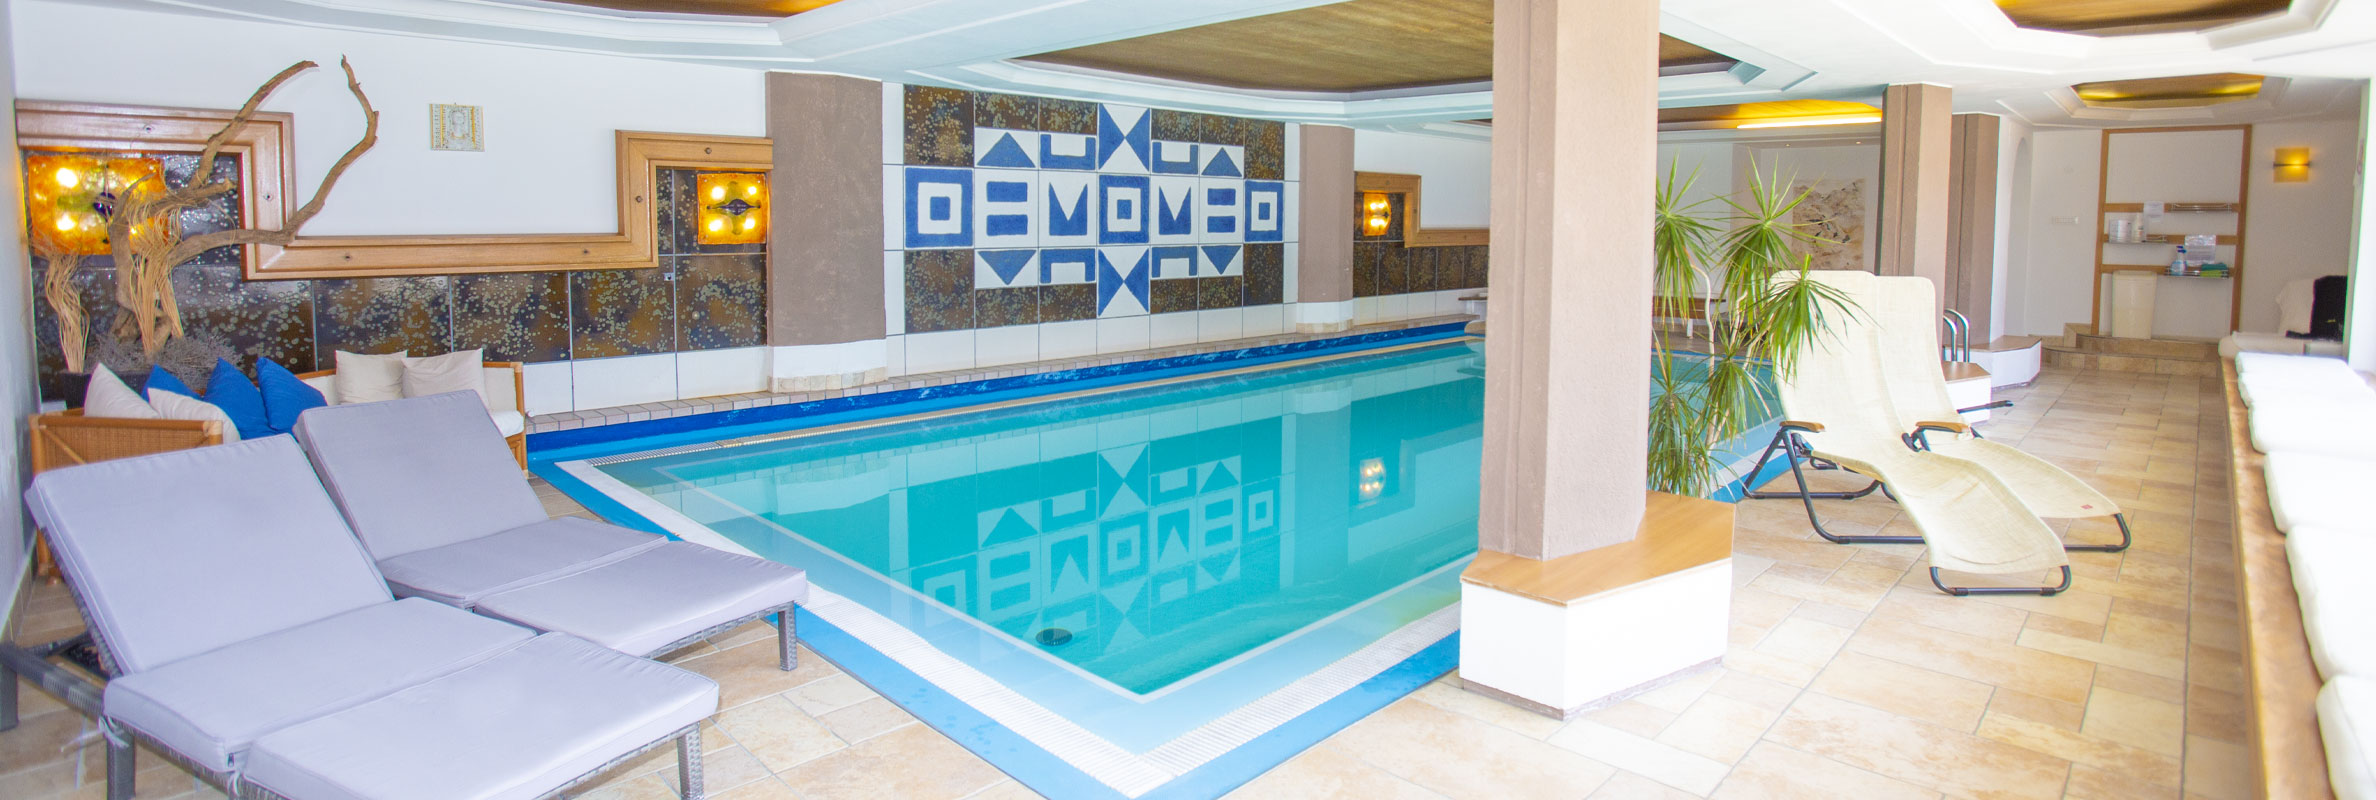 Indoor swimming pool - Hotel Vernagt